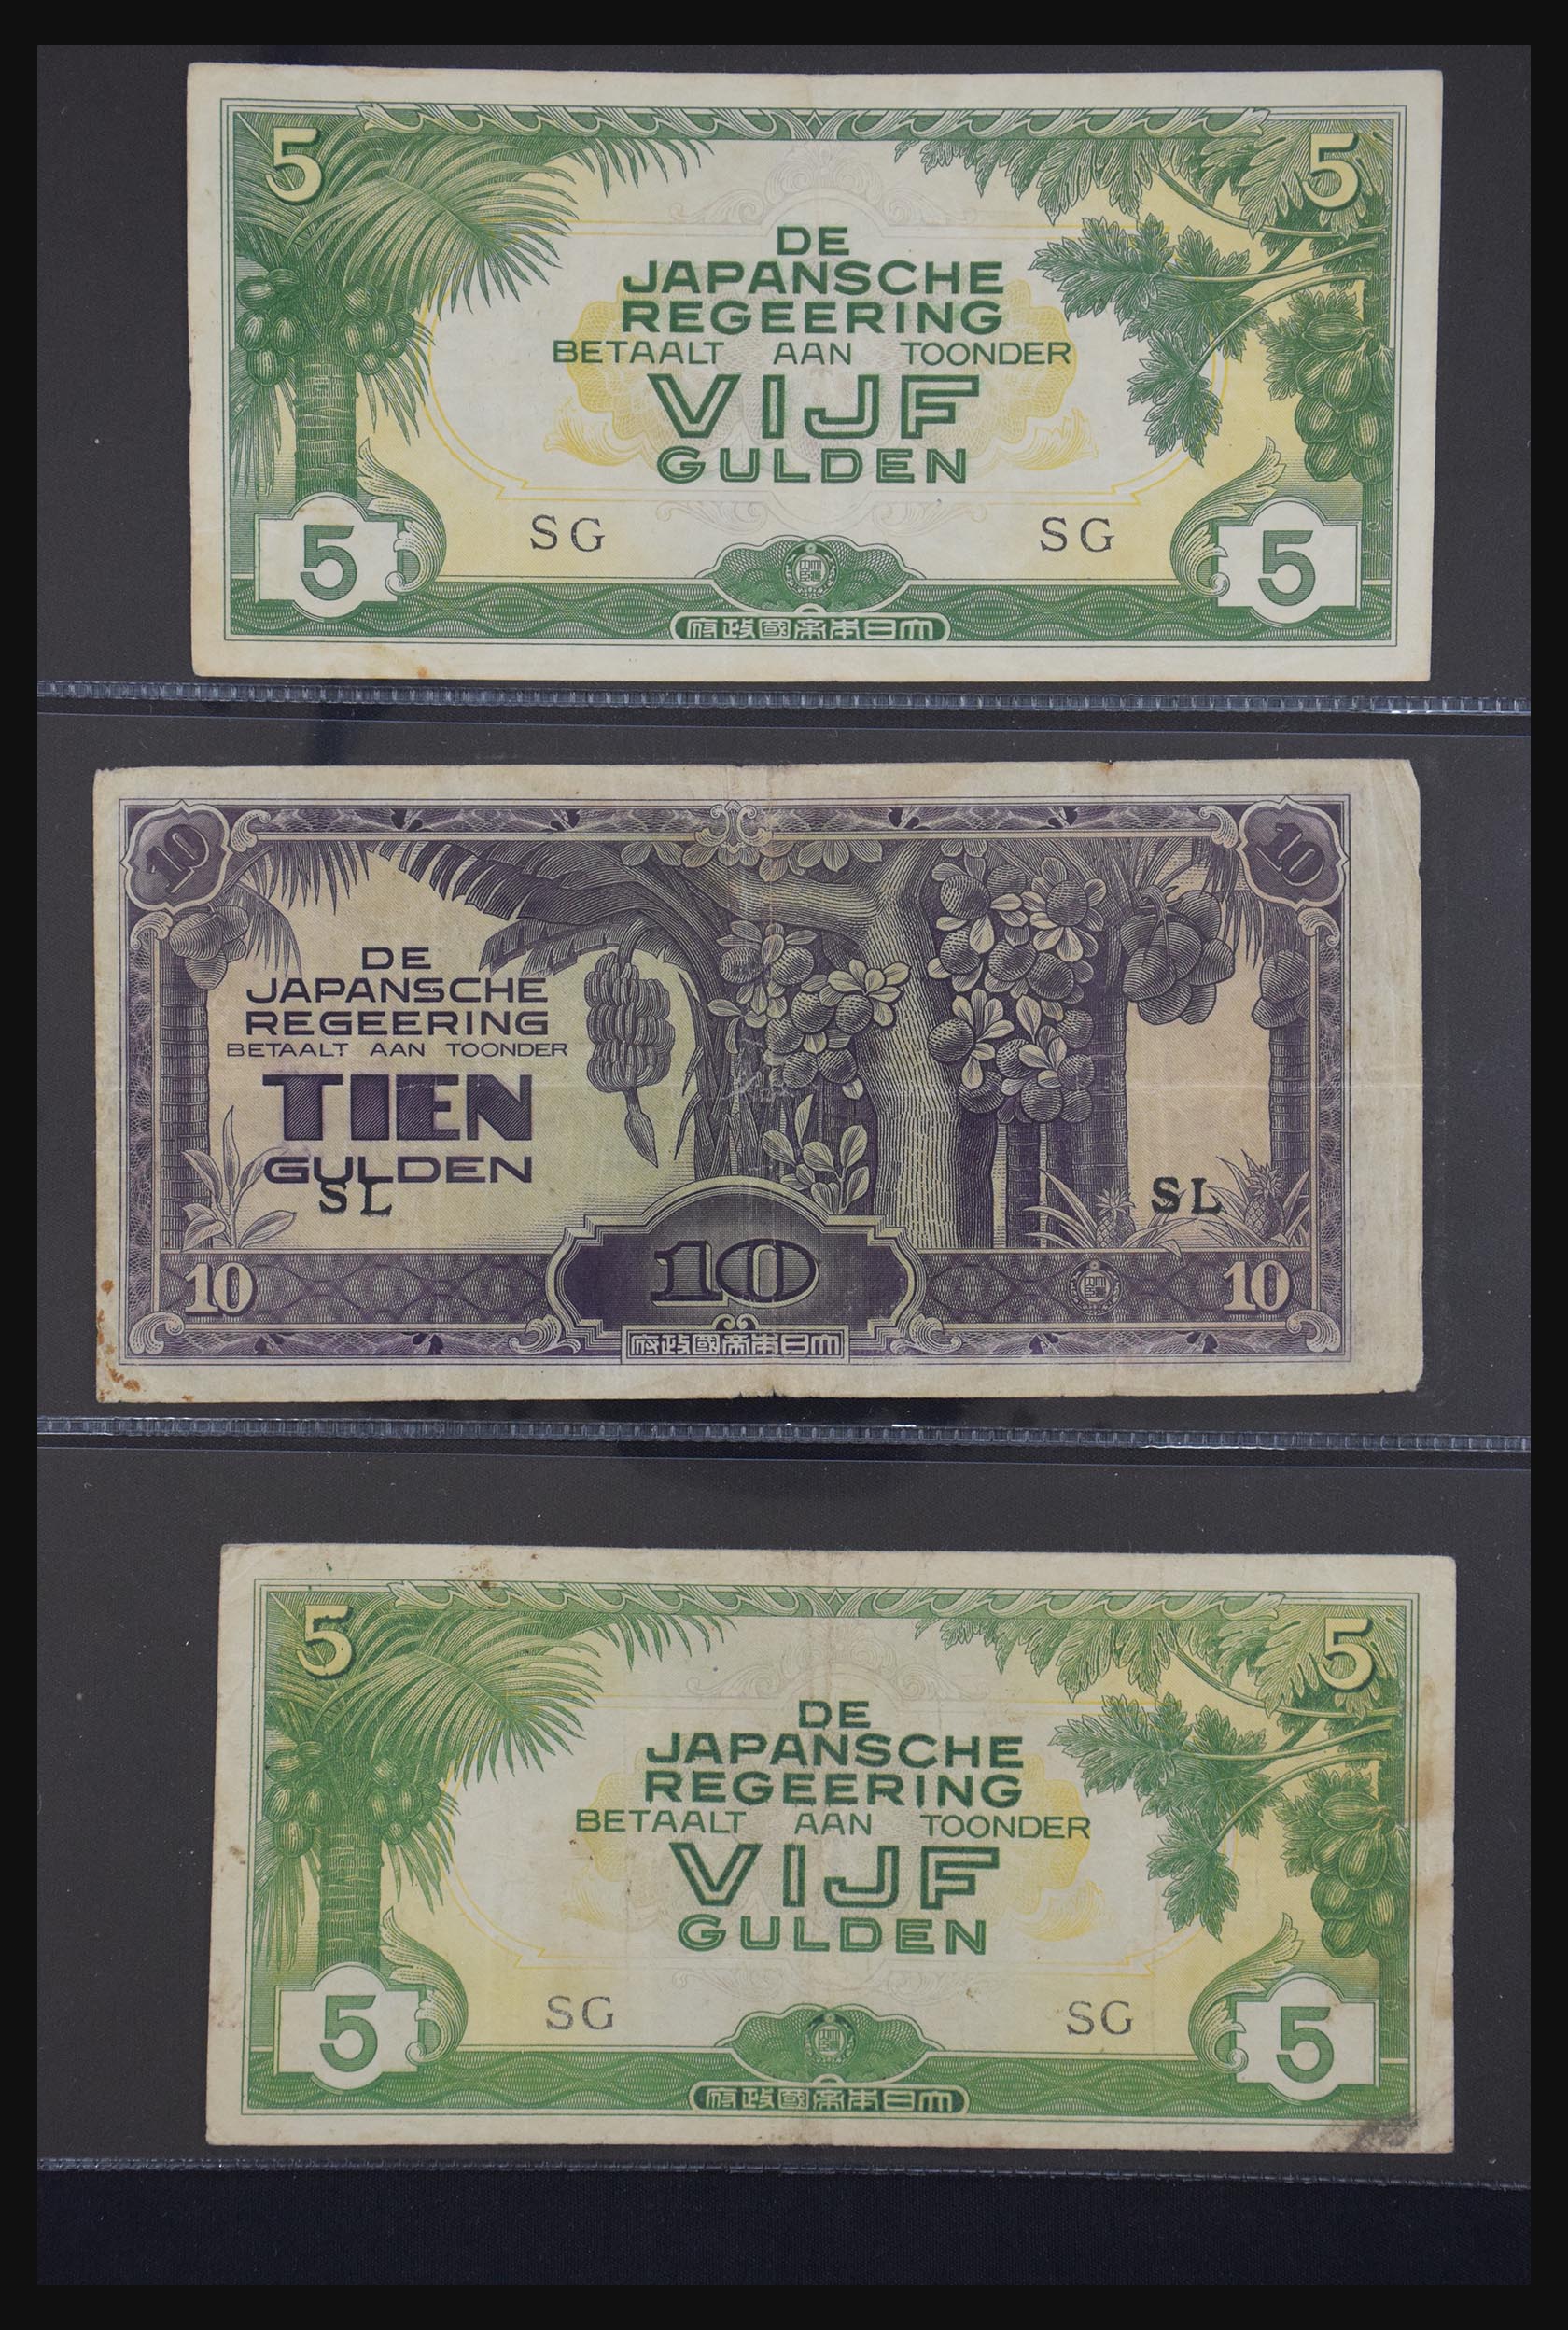 29404 061 - 29404 Netherlands banknotes 1924-1997.